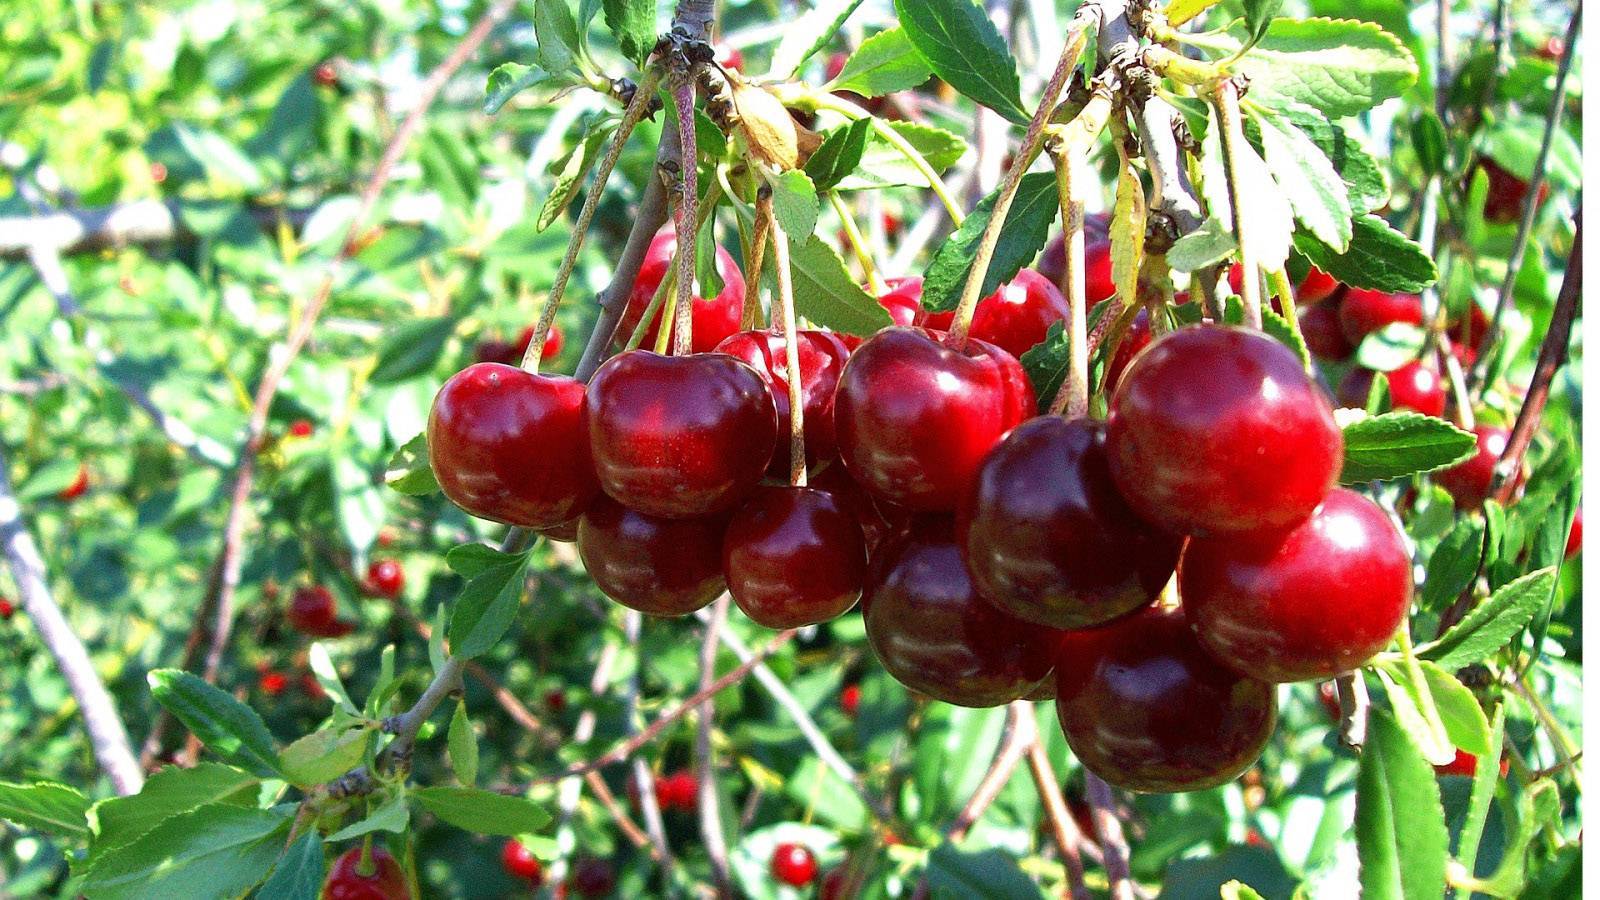 Брусницына — сильный сорт вишни, подходящий для выращивания в северных регионах